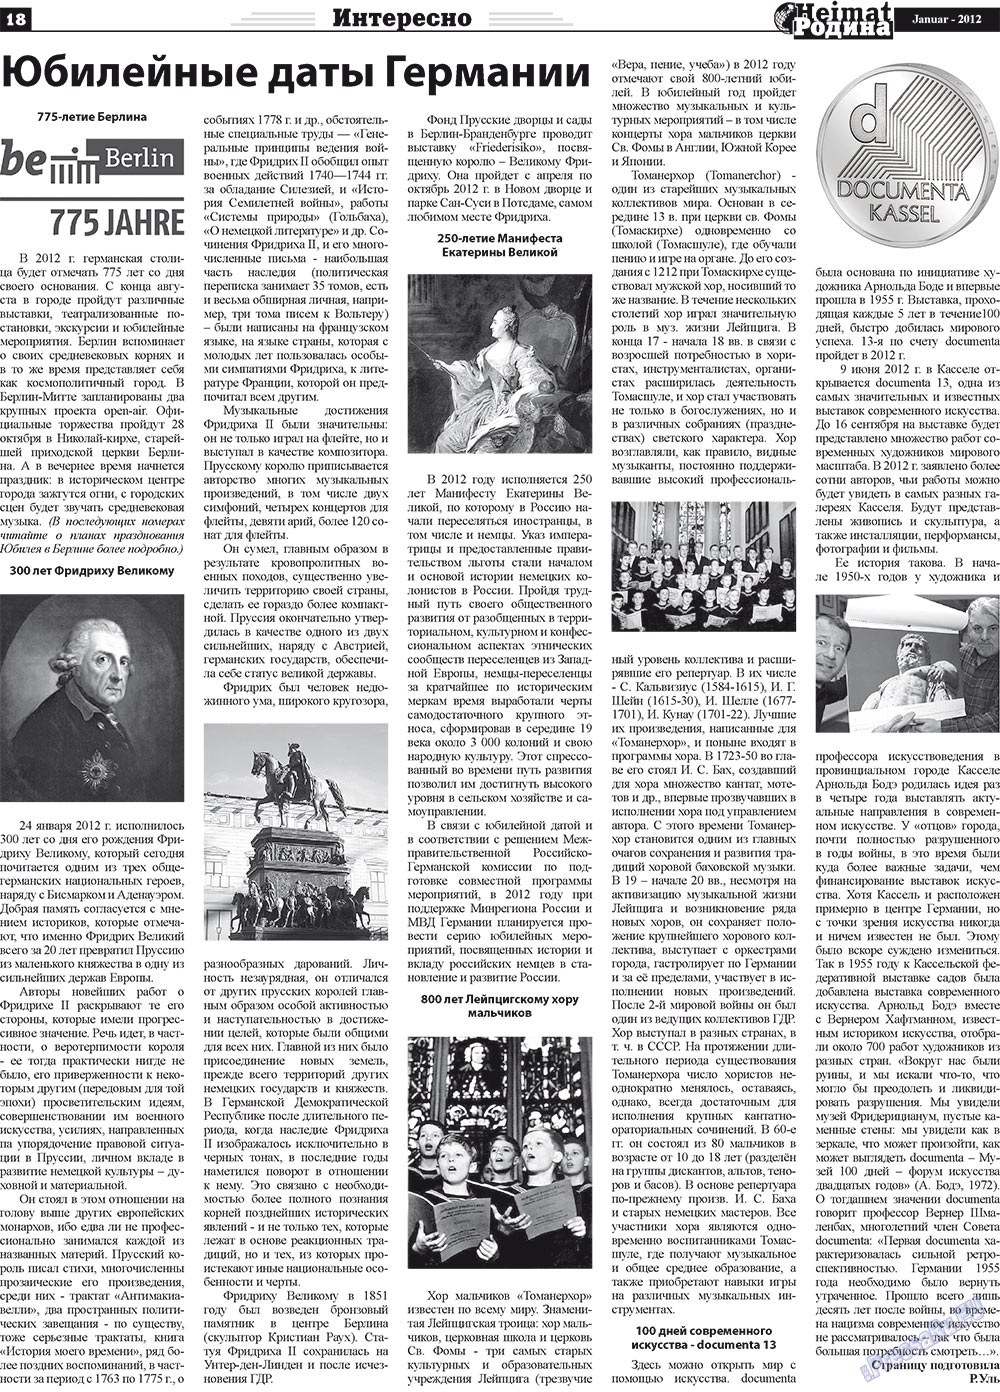 Heimat-Родина (газета). 2012 год, номер 1, стр. 18